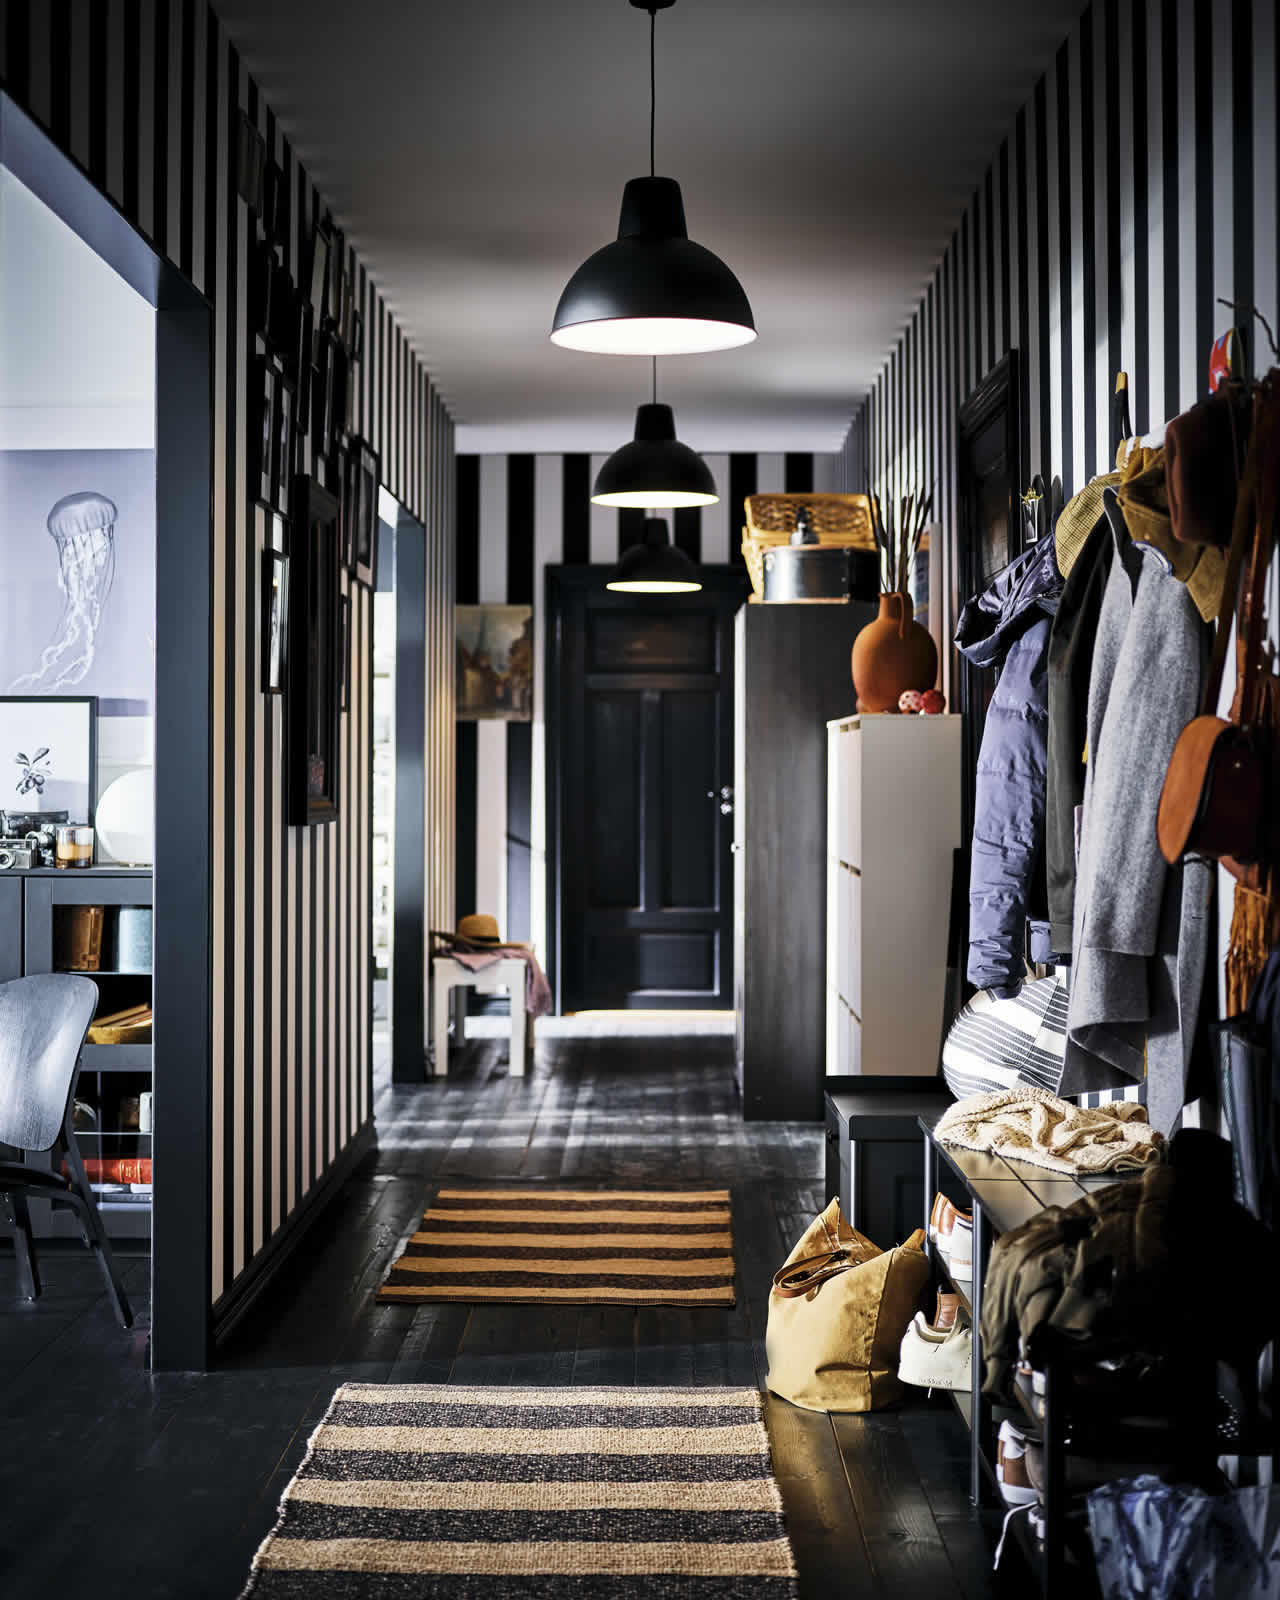 Ideas - Home 6 - Uygun bir bütçeyle düzenleyebileceğiniz siyah ve beyaz tonların kullanıldığı bir oda